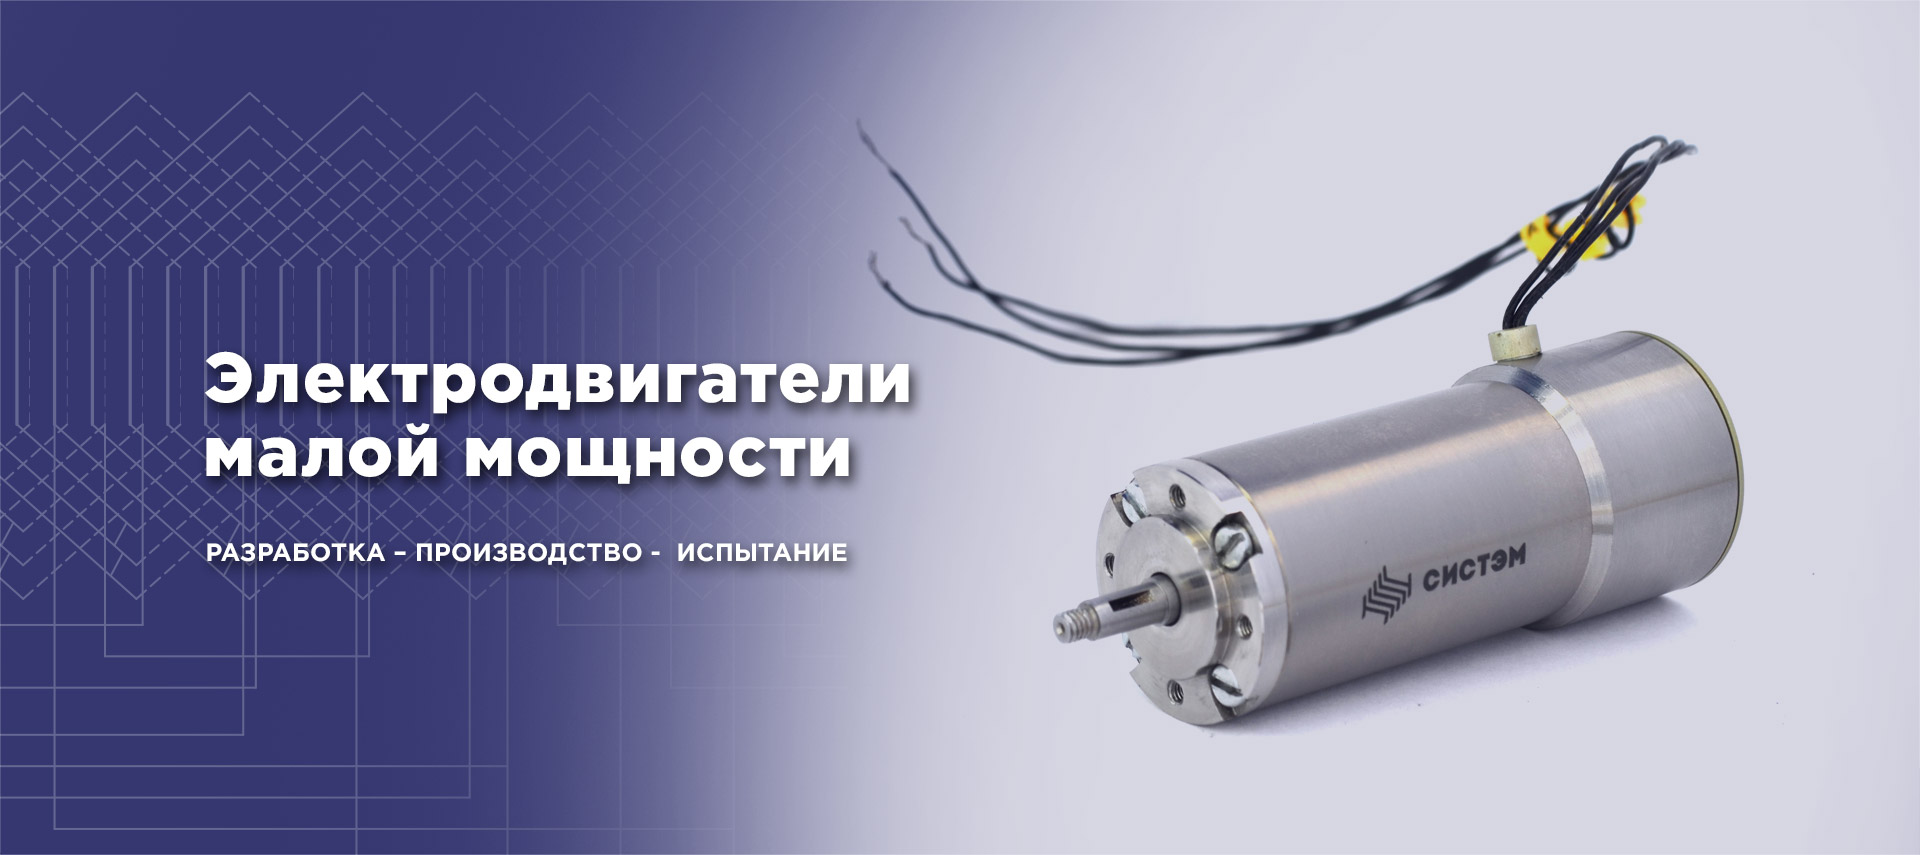 Электродвигатели малой мощности Россия. Разработка, производство, испытание